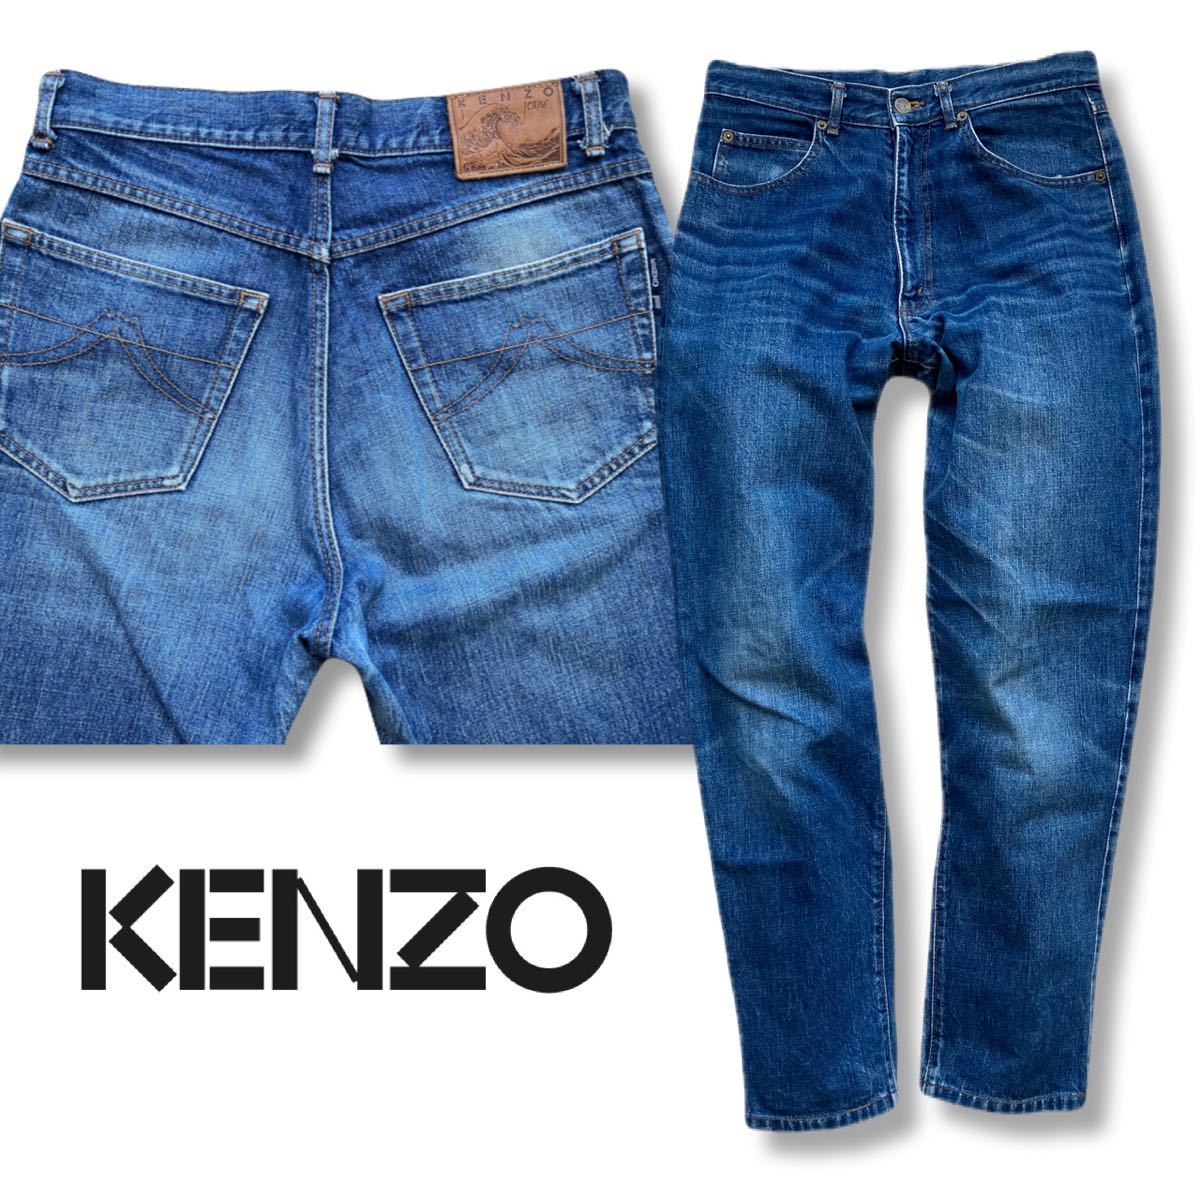  бесплатная доставка Trend Silhouette Kenzo KENZO jeans Denim брюки джинсы медленно конический север . кожа patch Old Vintage 79